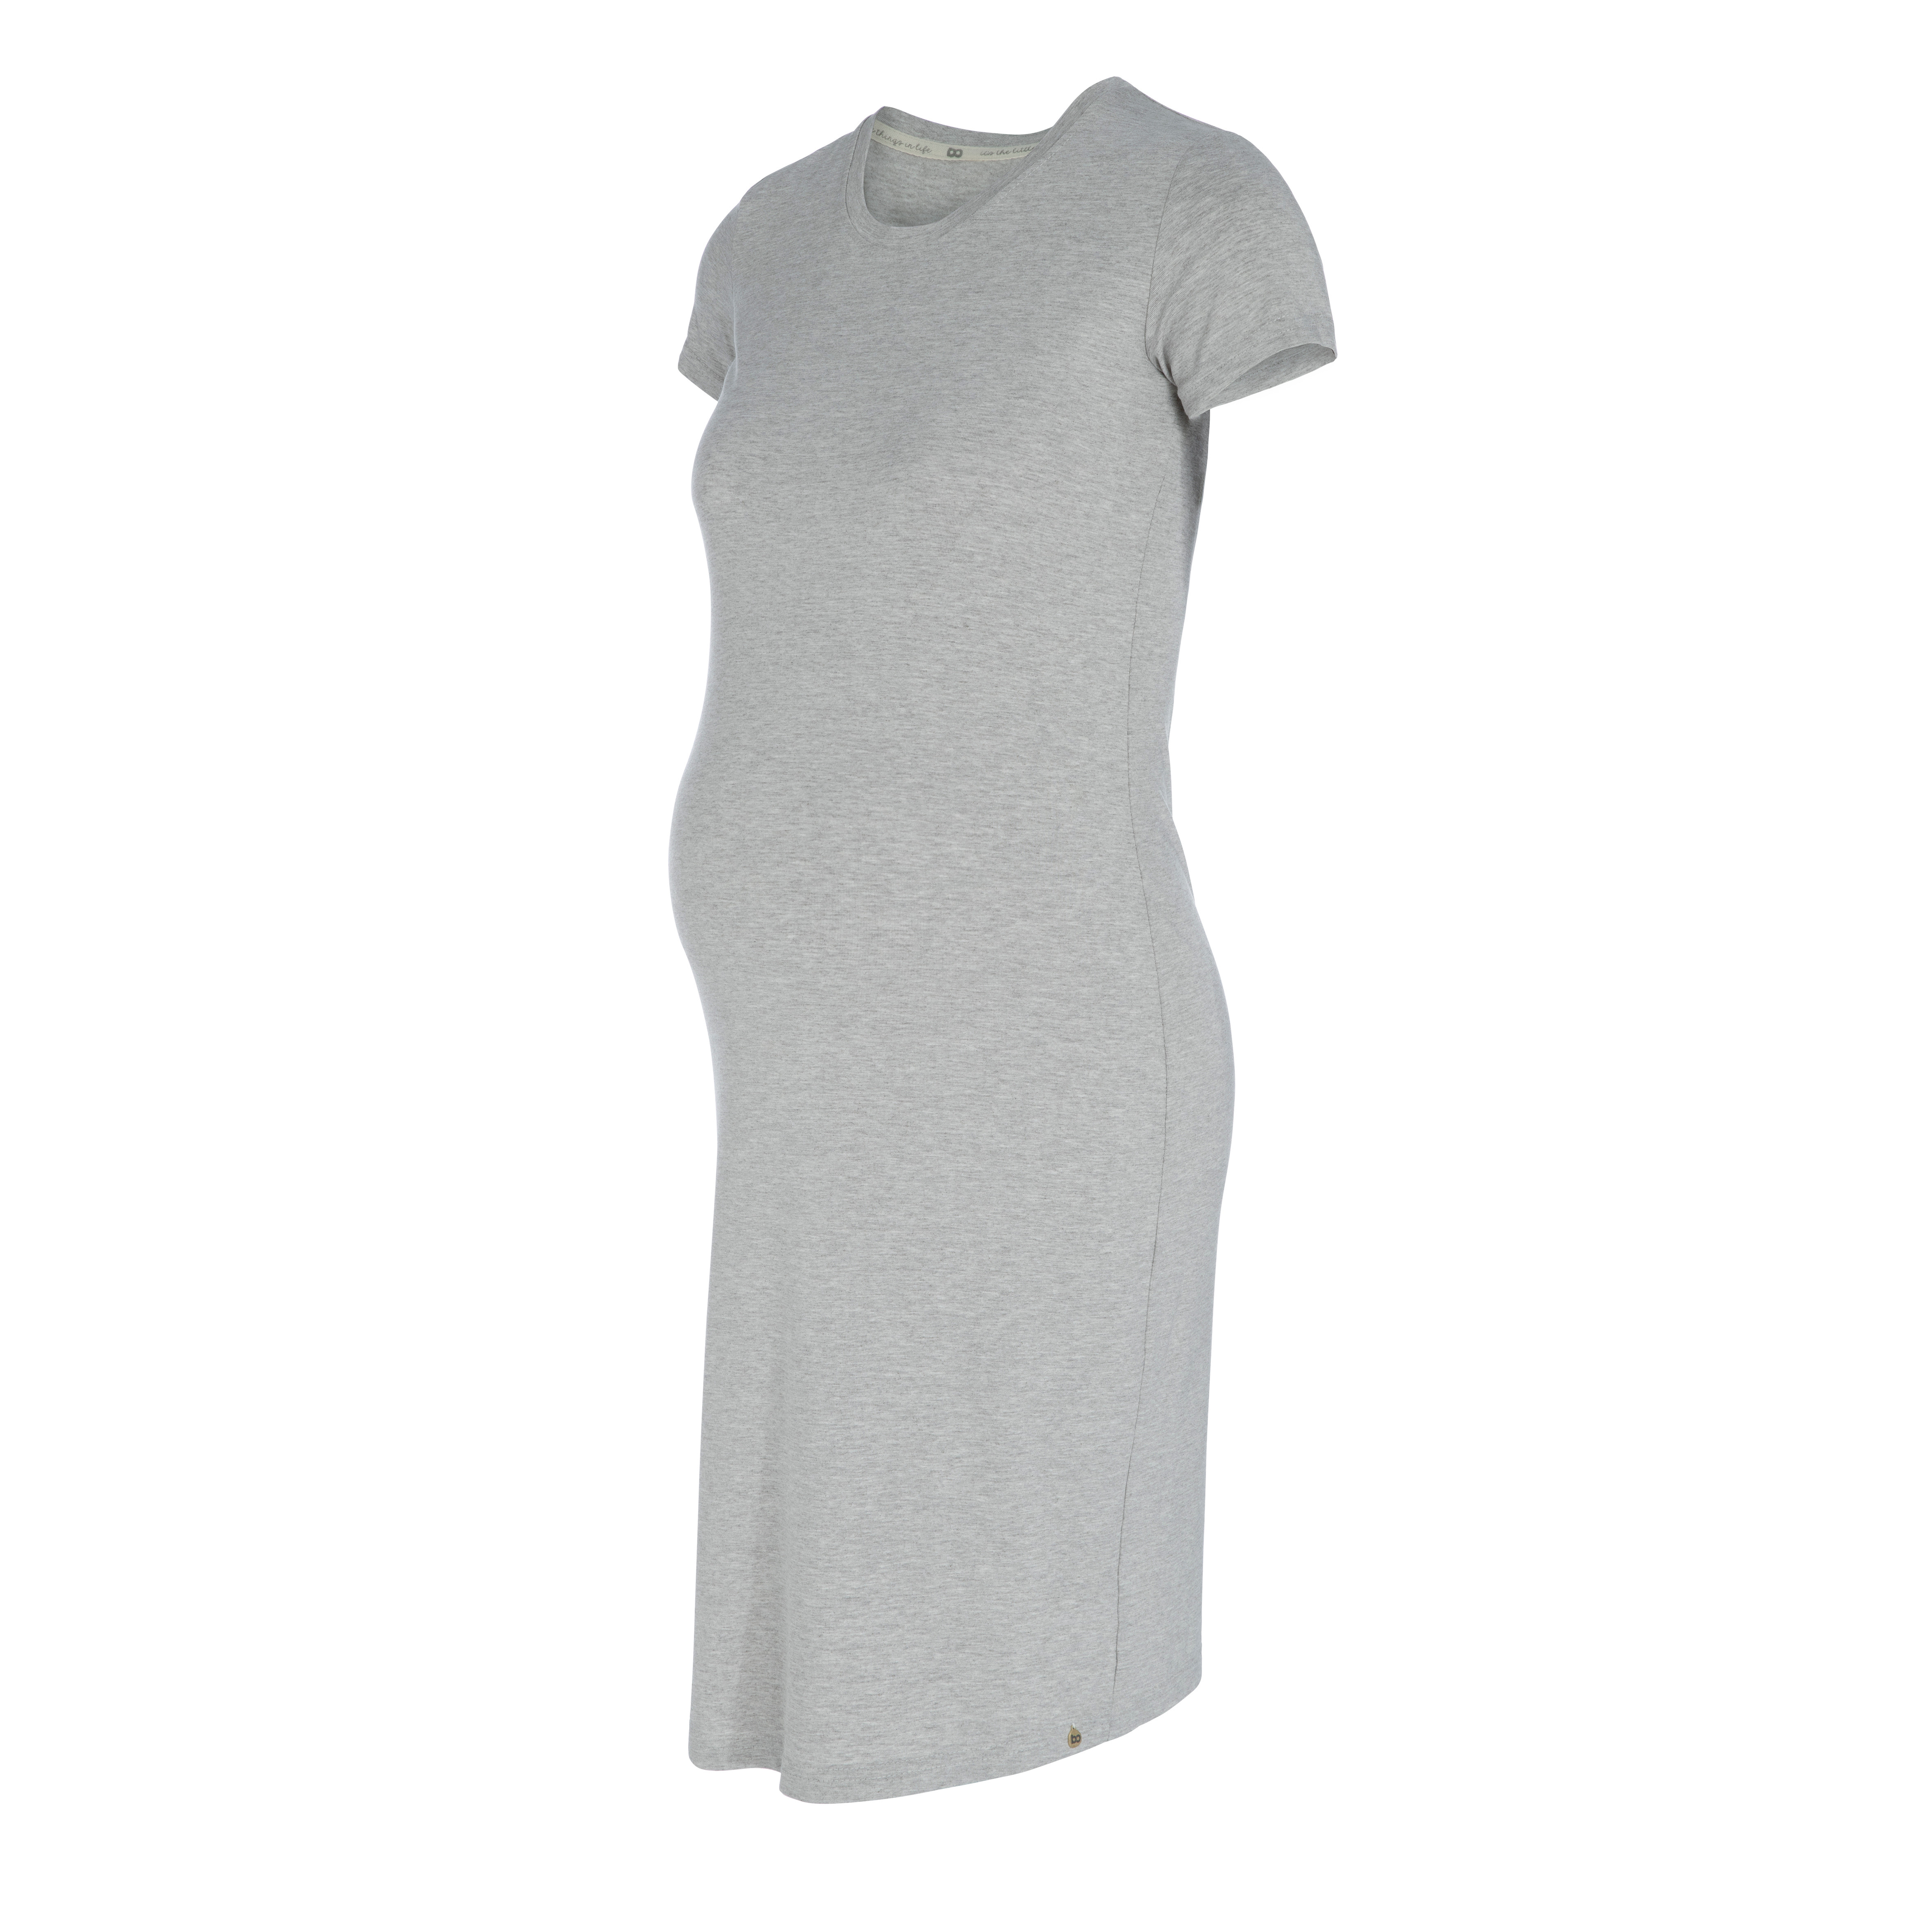 Maternity dress Glow dusty grey - XL